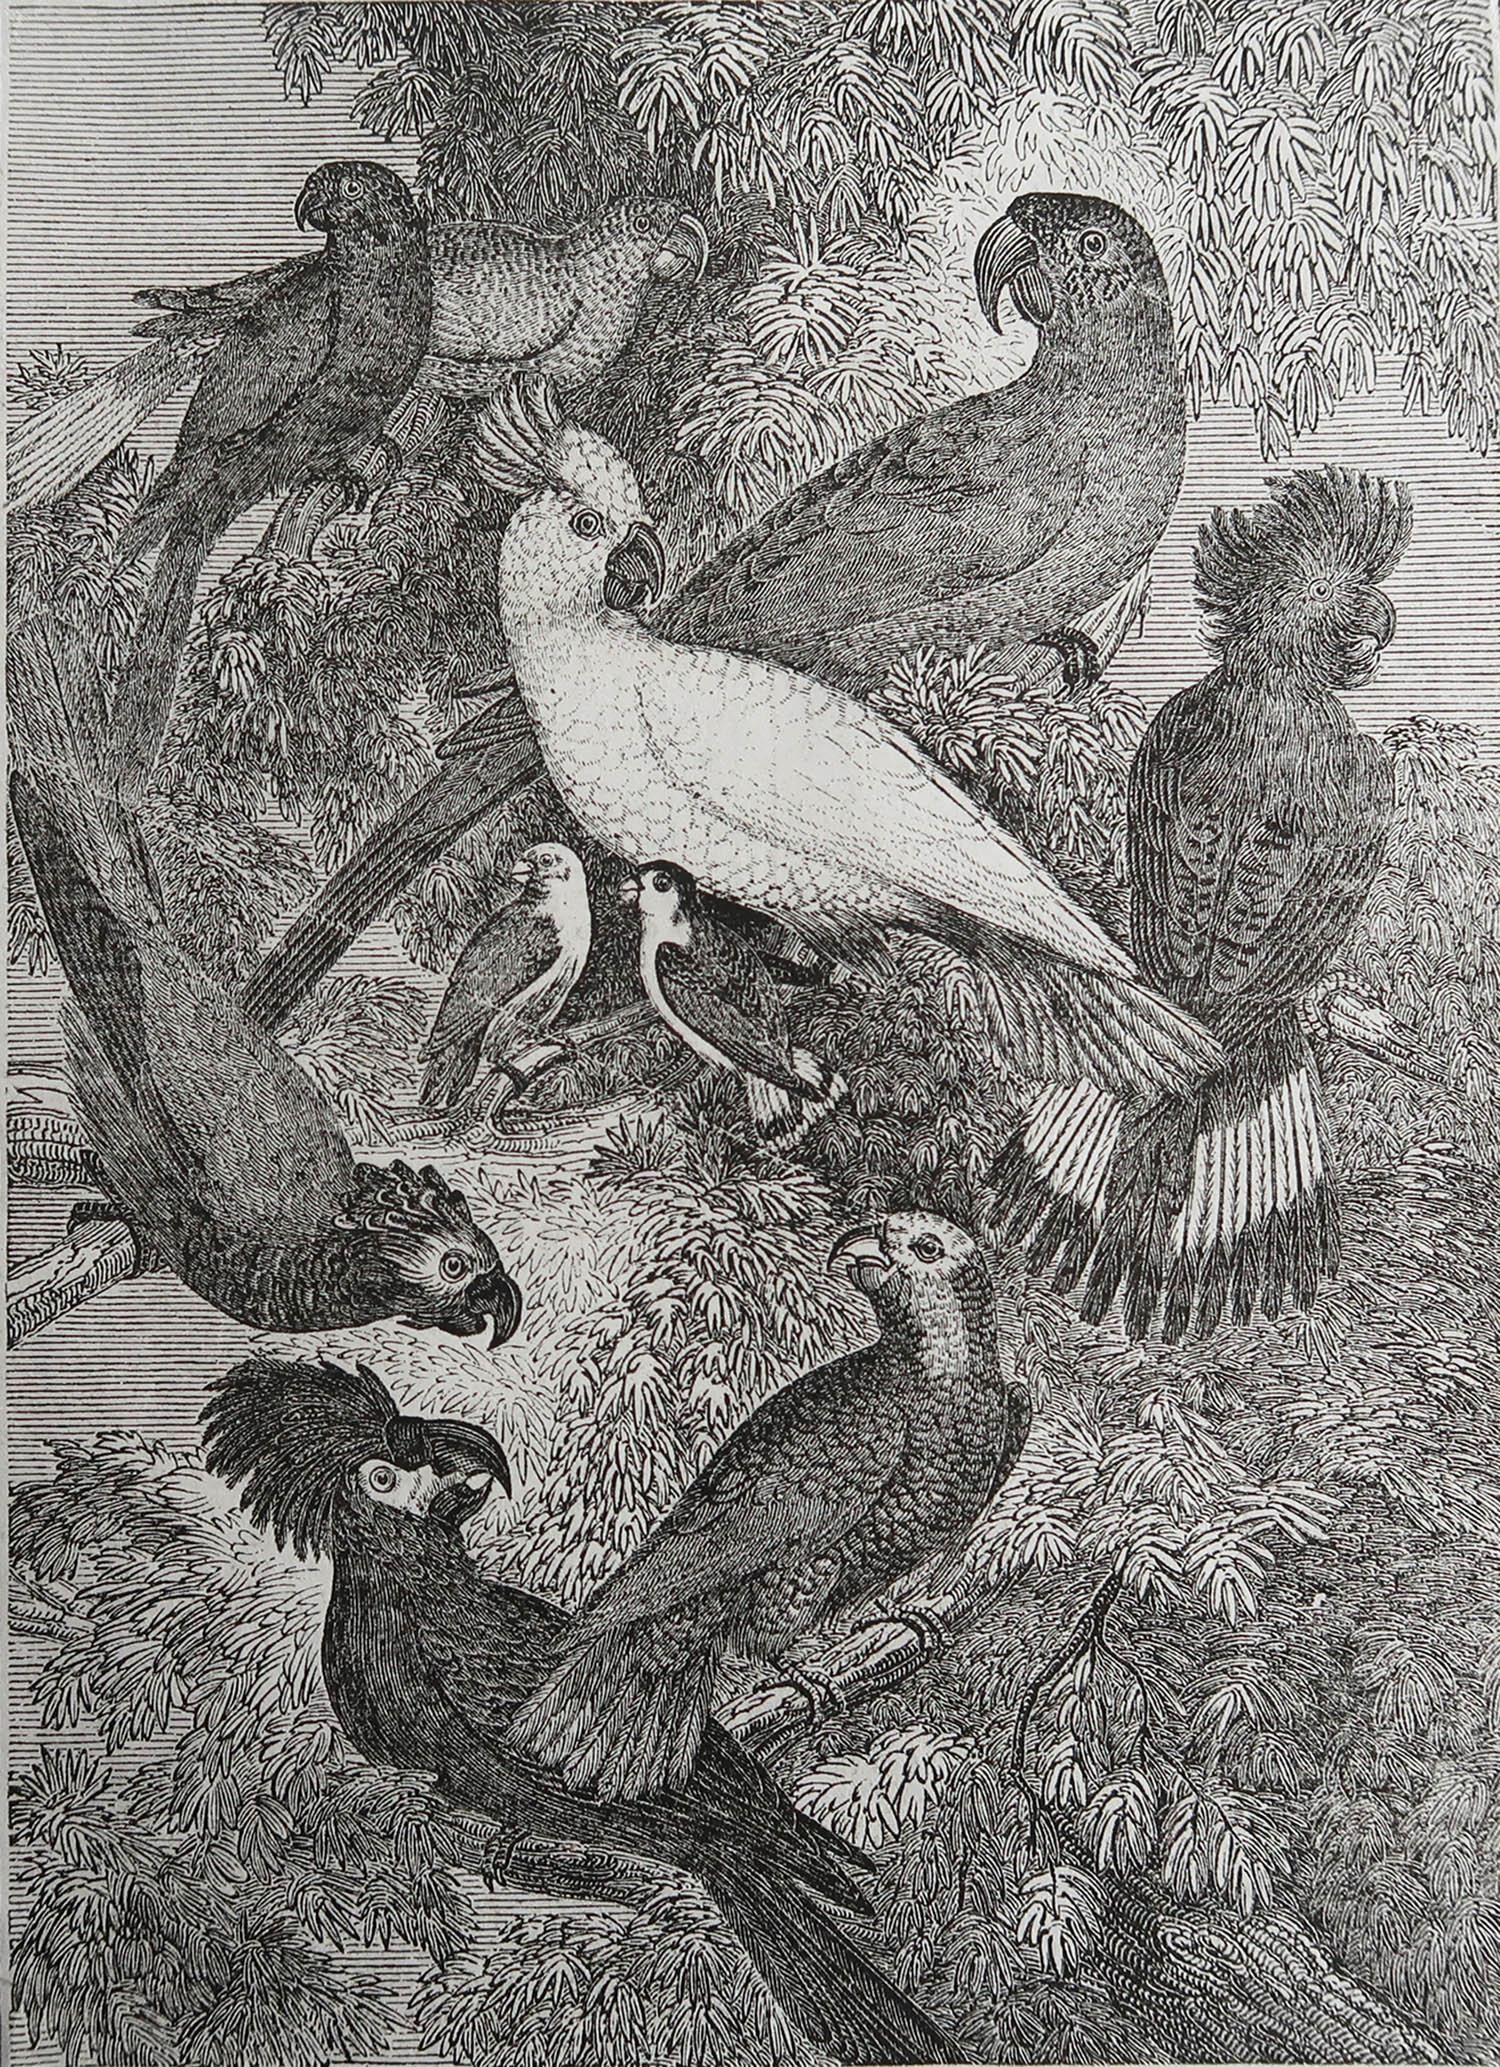 Belle image de perroquets

Gravure sur bois

Texte au verso

Publié en 1833.



Livraison gratuite.




